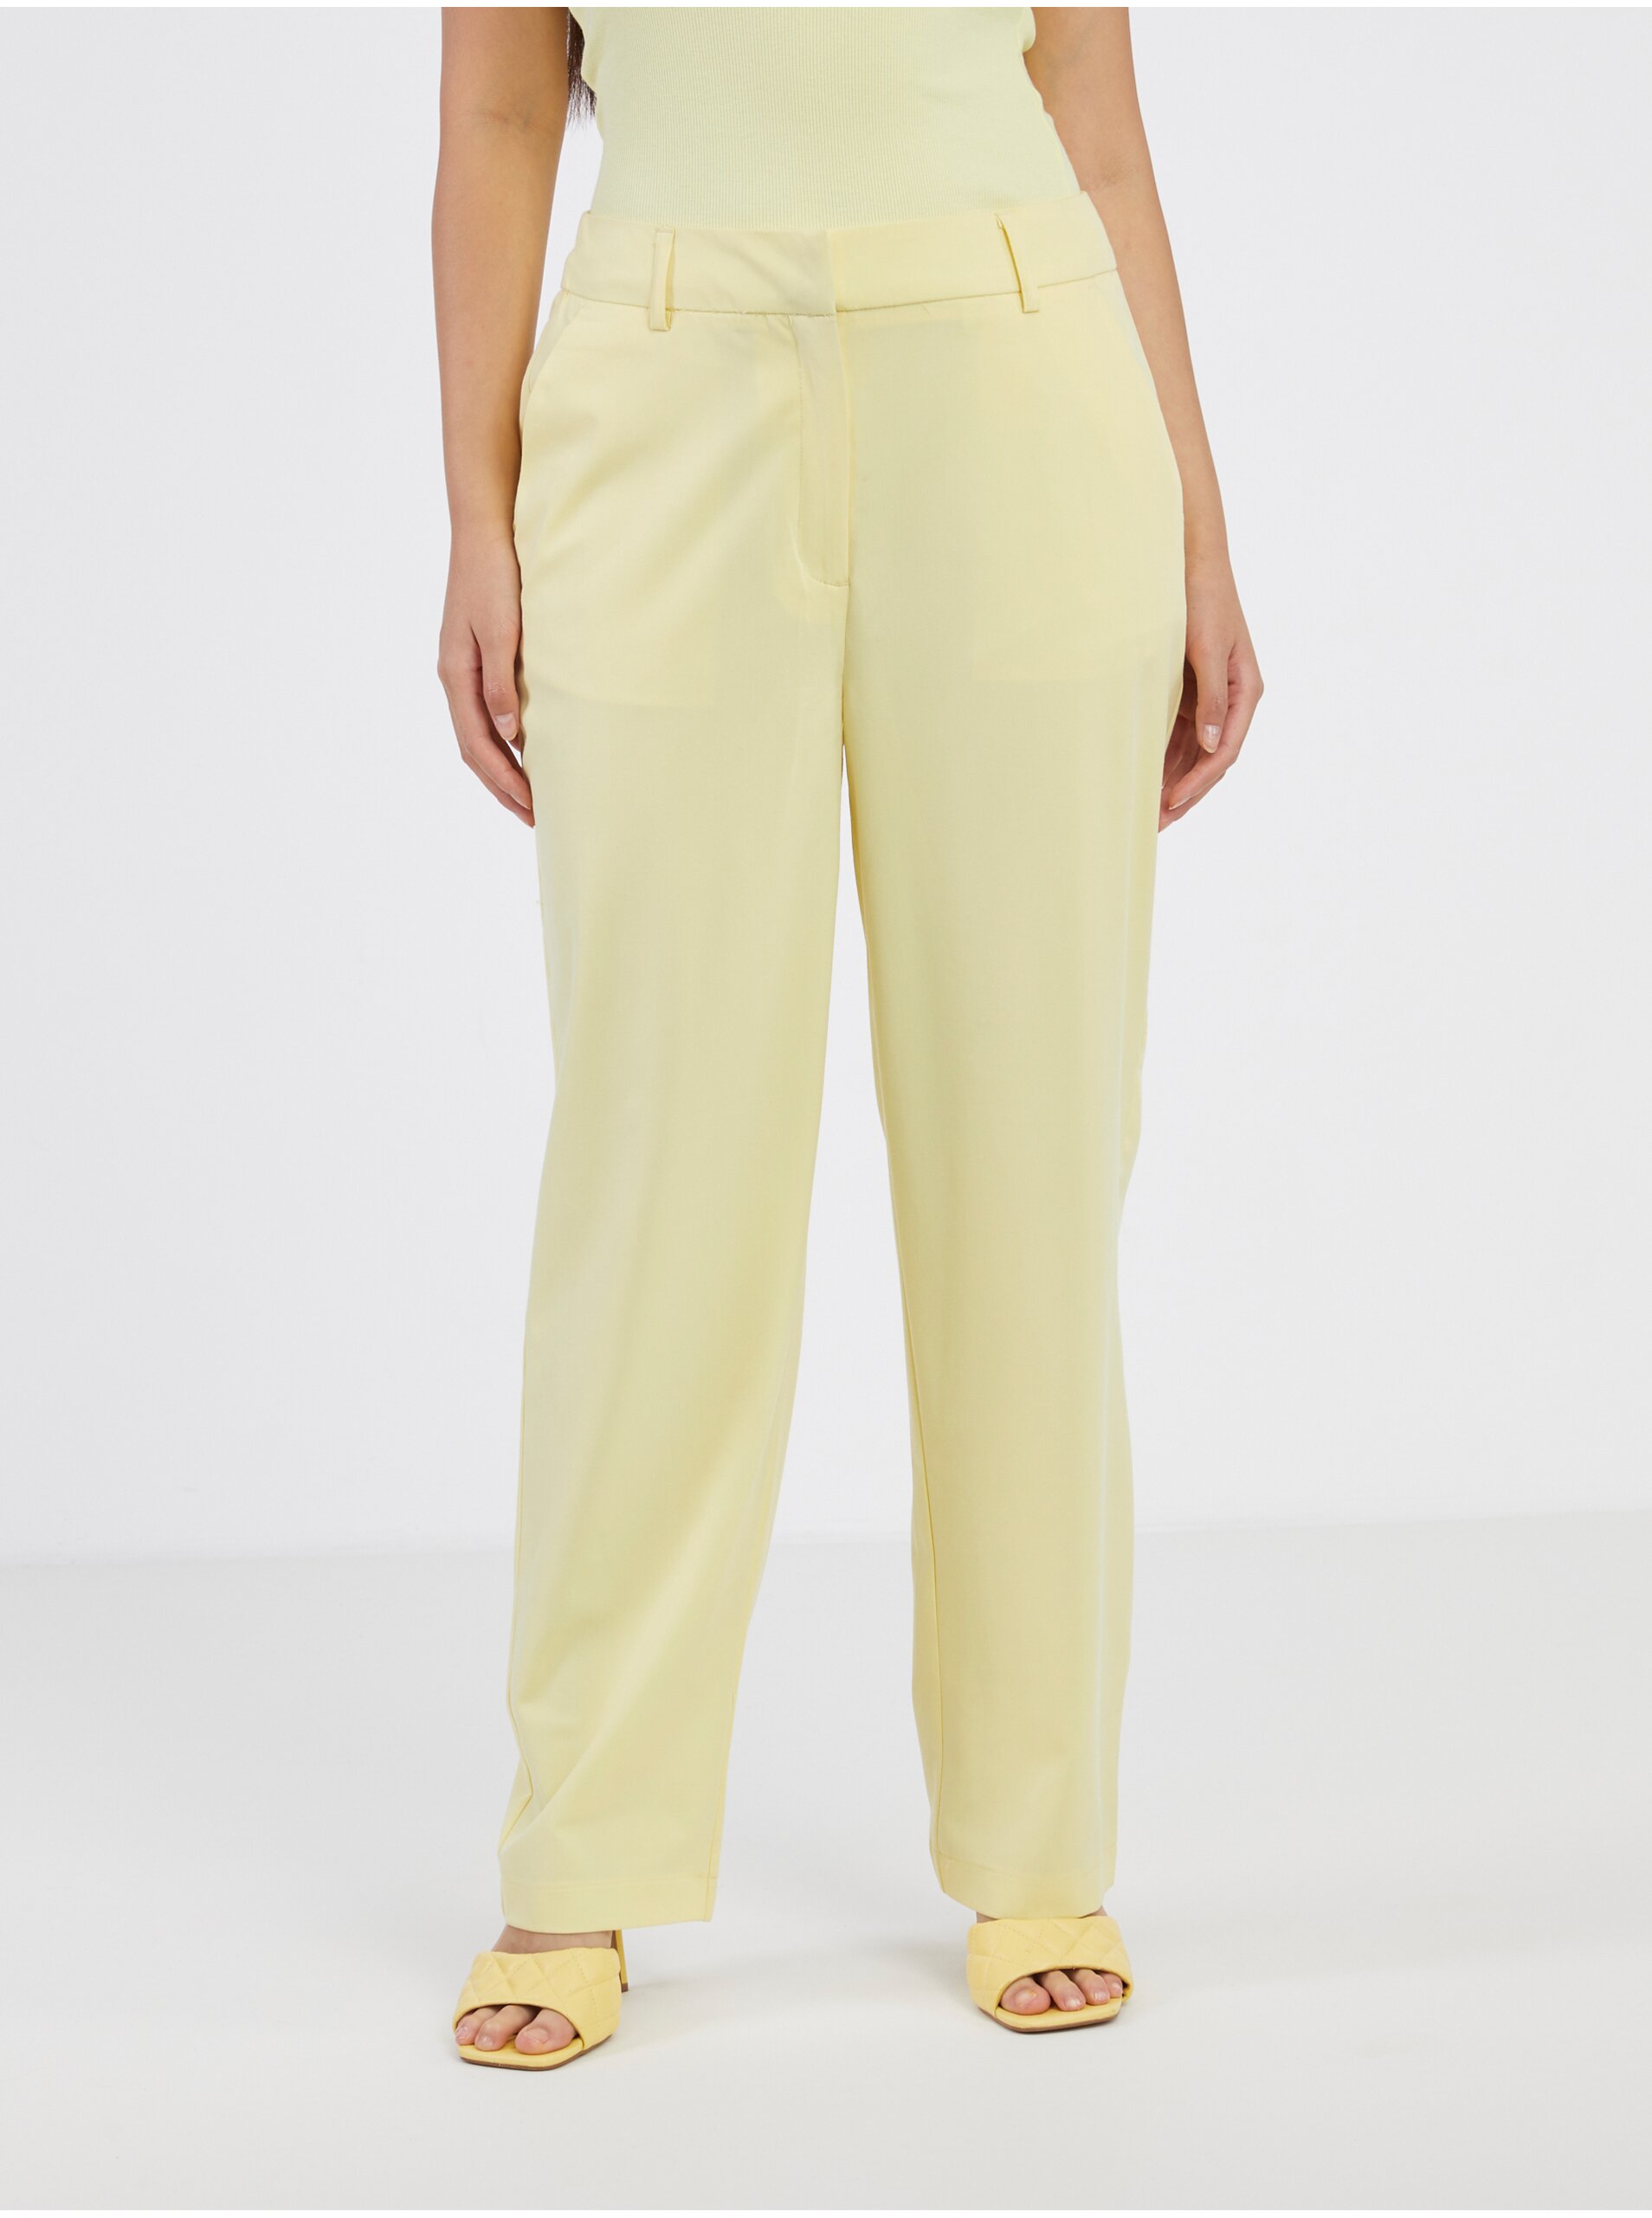 E-shop Světle žluté dámské kalhoty VERO MODA Zelda